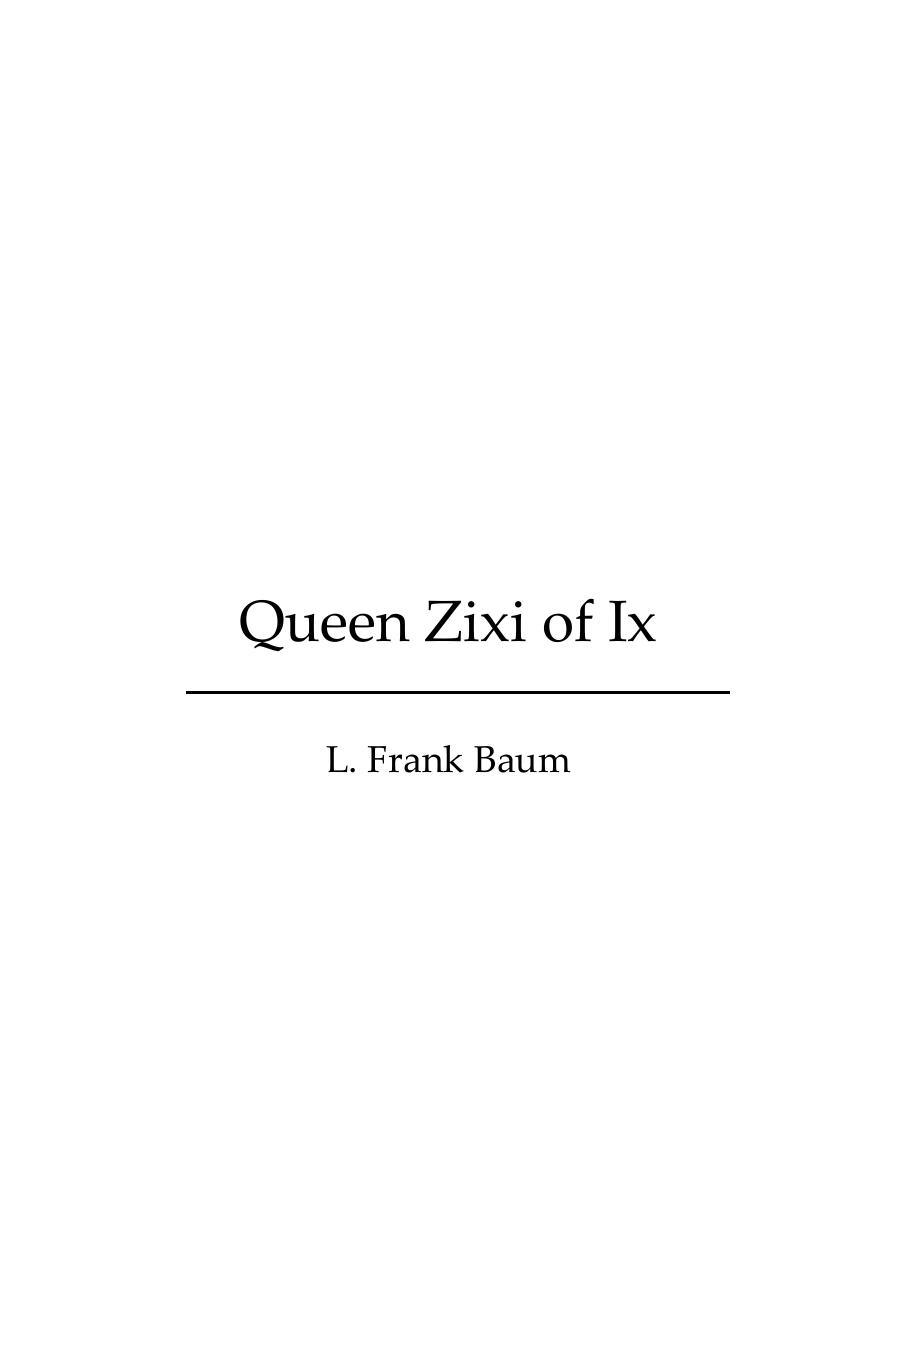 Queen Zixi of Ix by L. Frank Baum